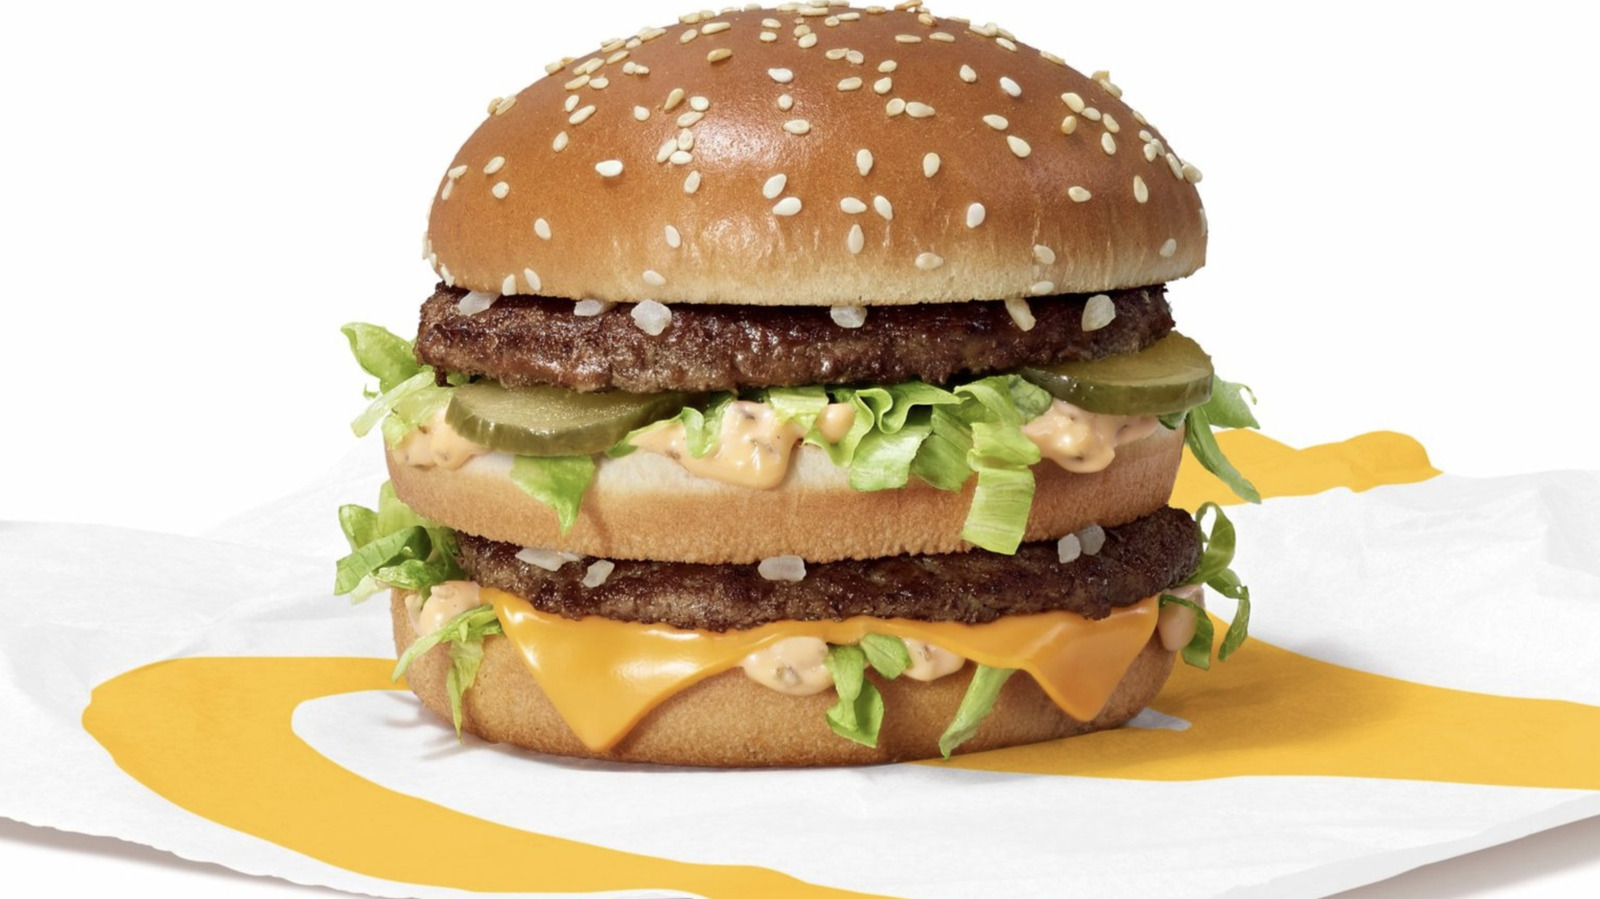 A New McDonald's Big Mac Might Be Coming